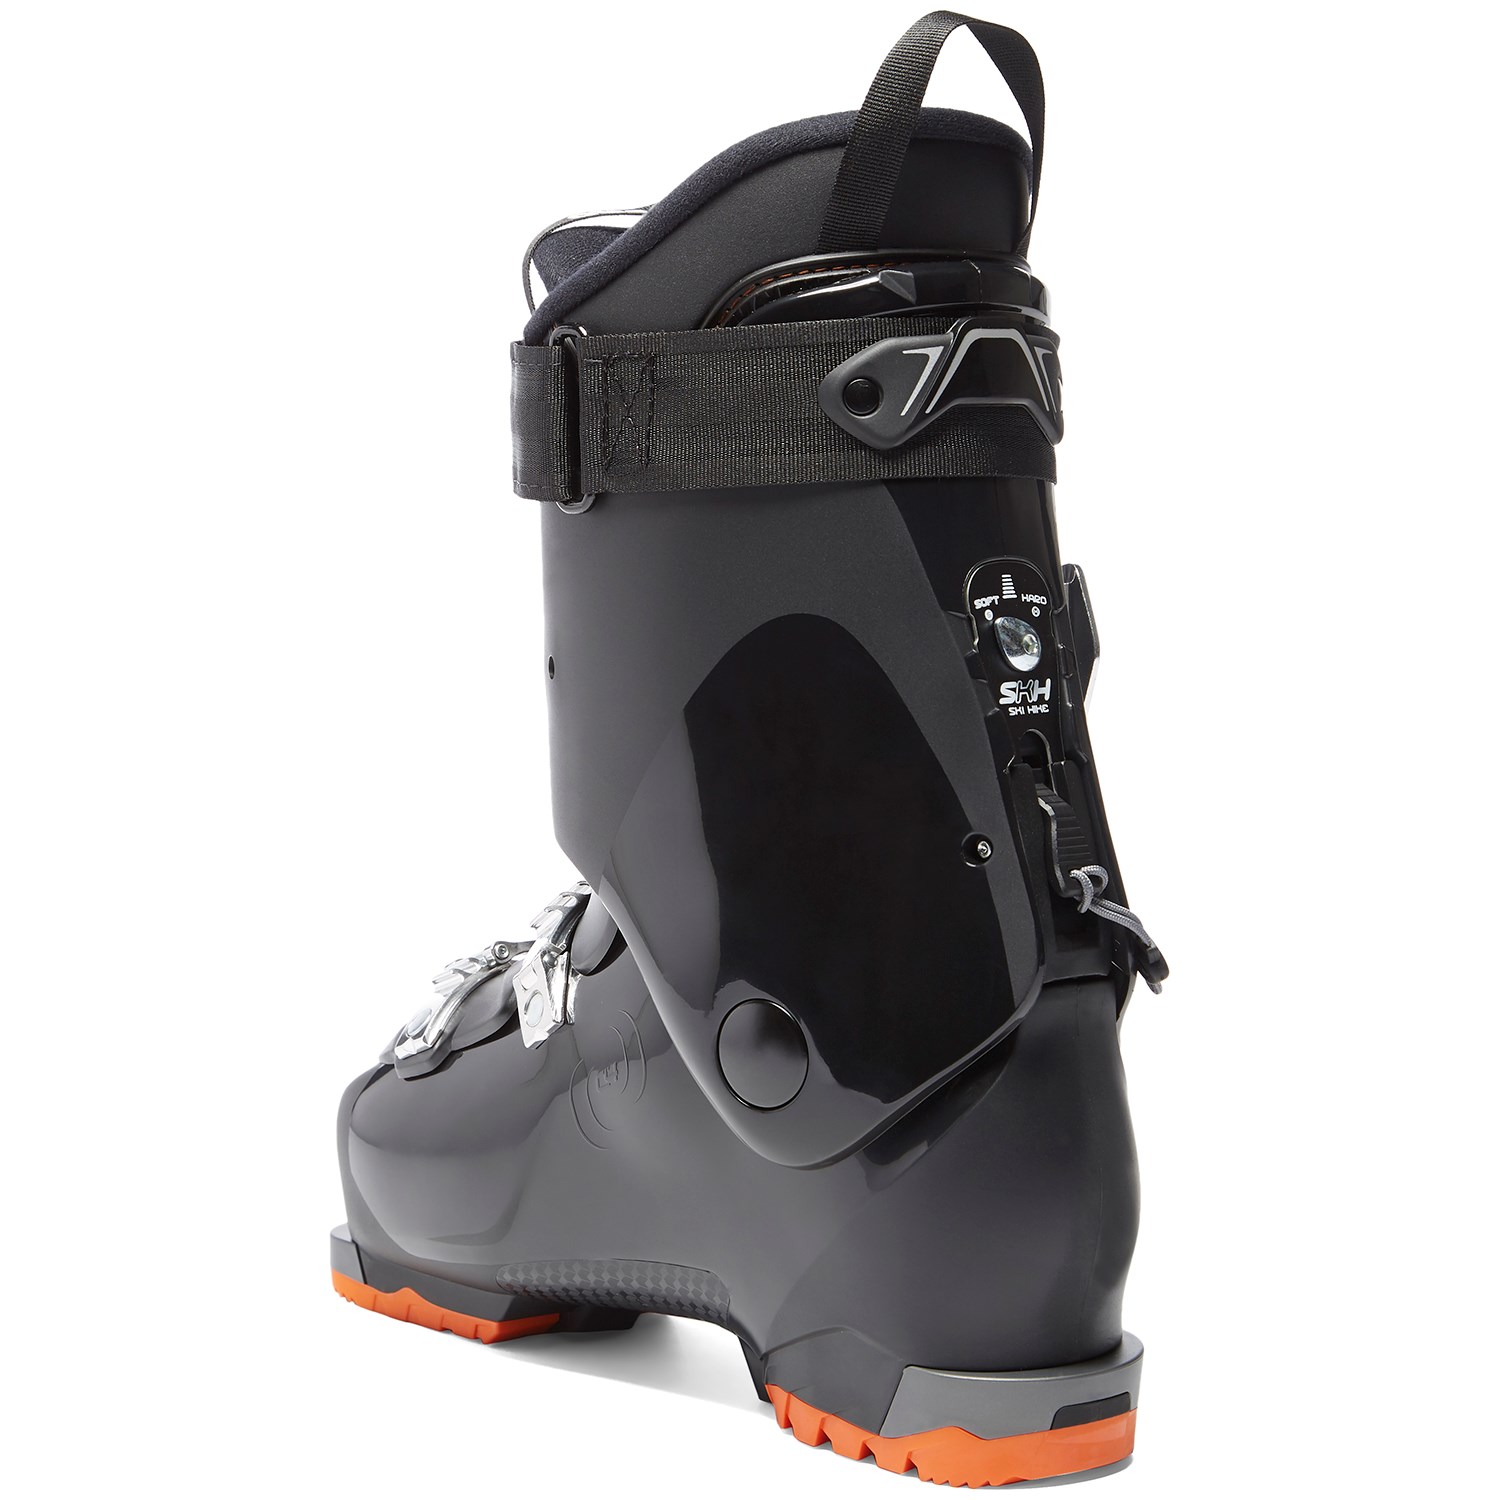 Dalbello Panterra MX 80 Ski Boots 2019 | evo